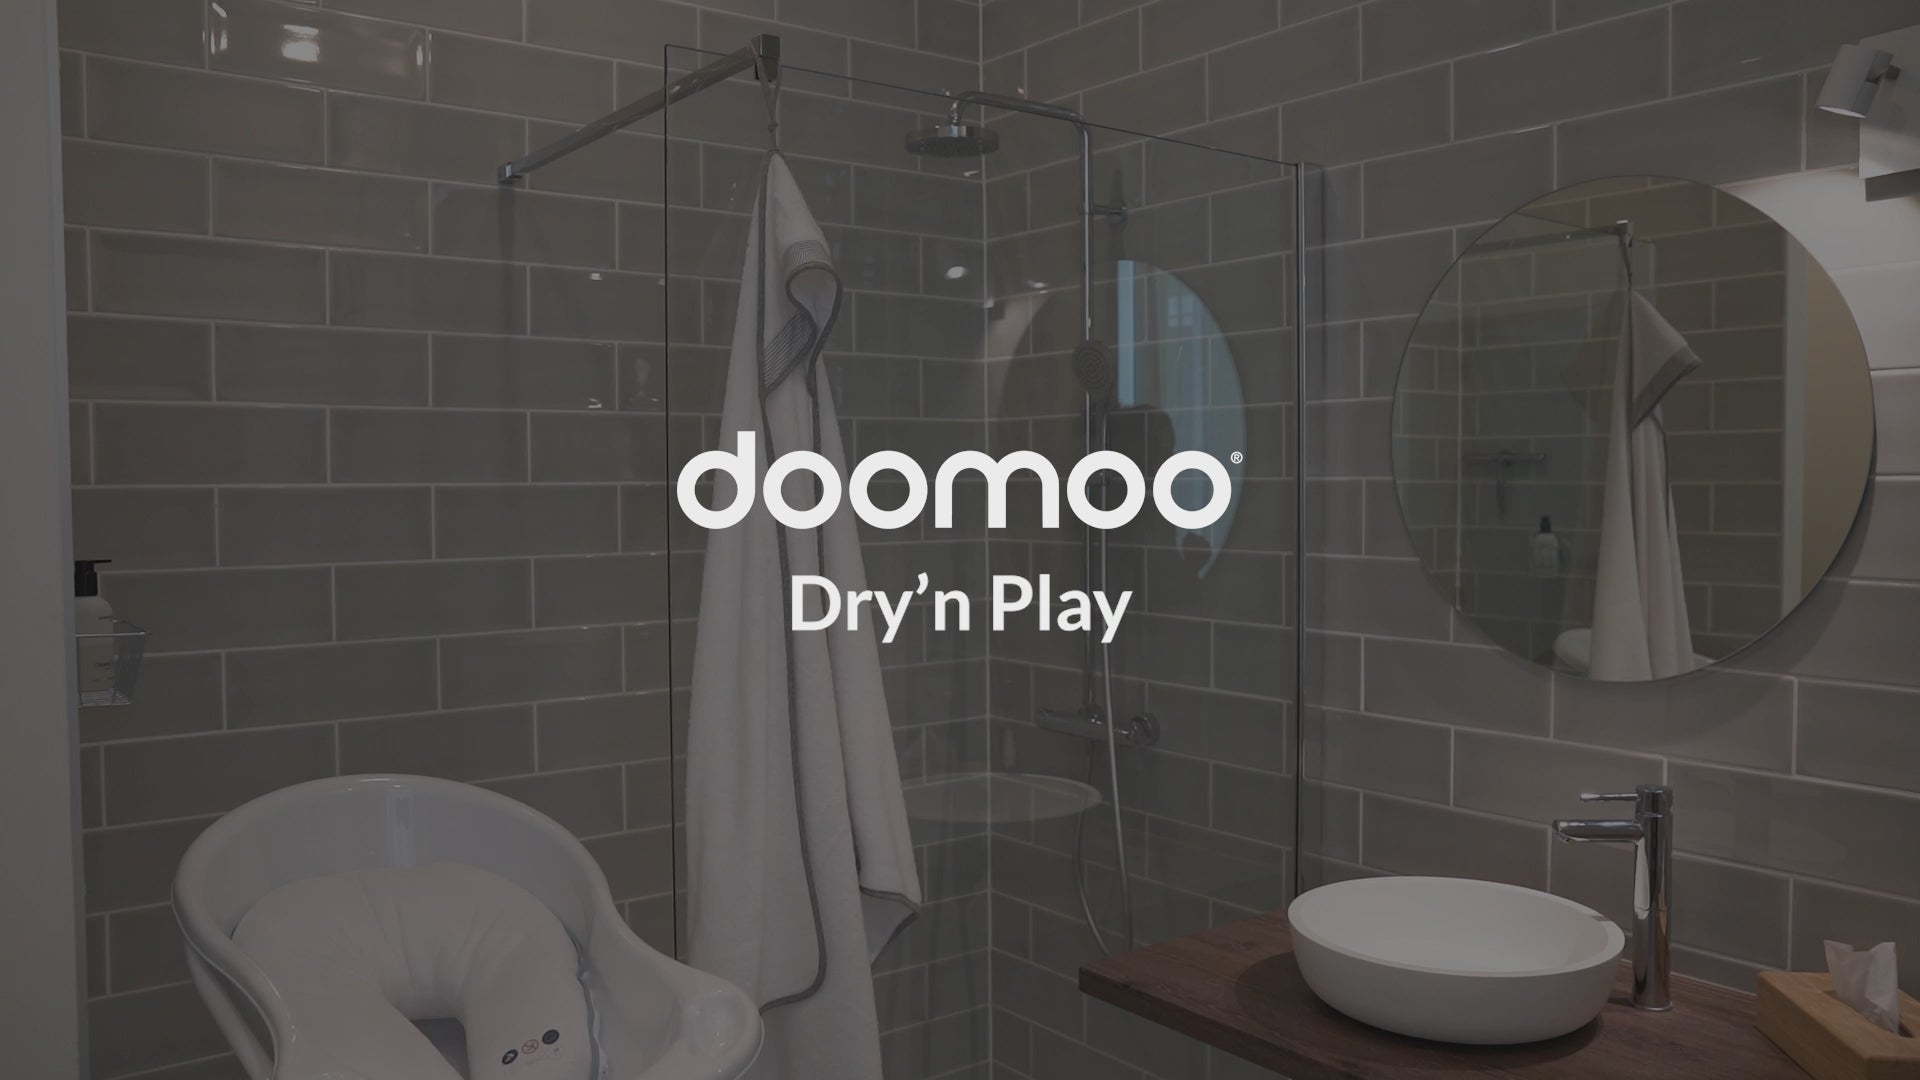 Doomoo Dry'n play - Grote groene babybadcape met bevestiging aan de achterkant om waterspatten te voorkomen